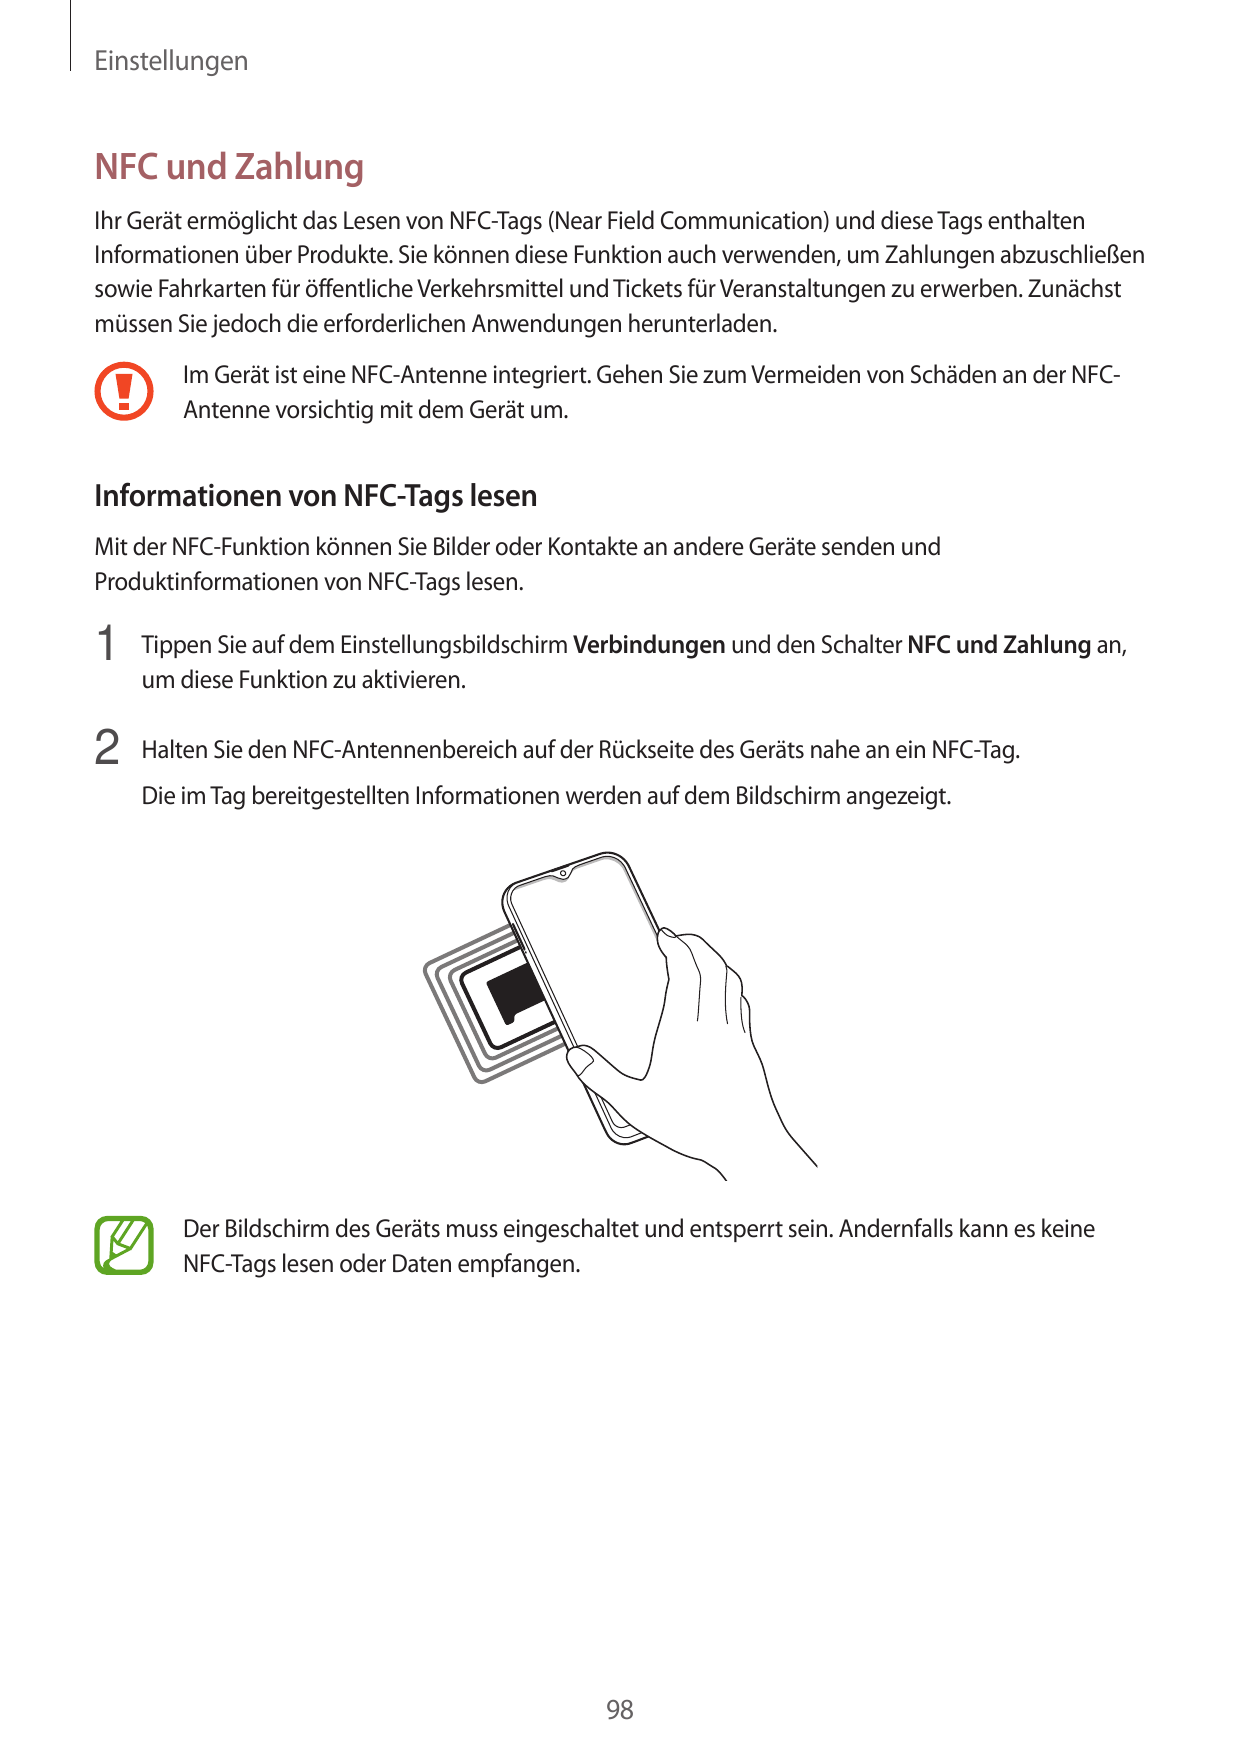 EinstellungenNFC und ZahlungIhr Gerät ermöglicht das Lesen von NFC-Tags (Near Field Communication) und diese Tags enthaltenInfor